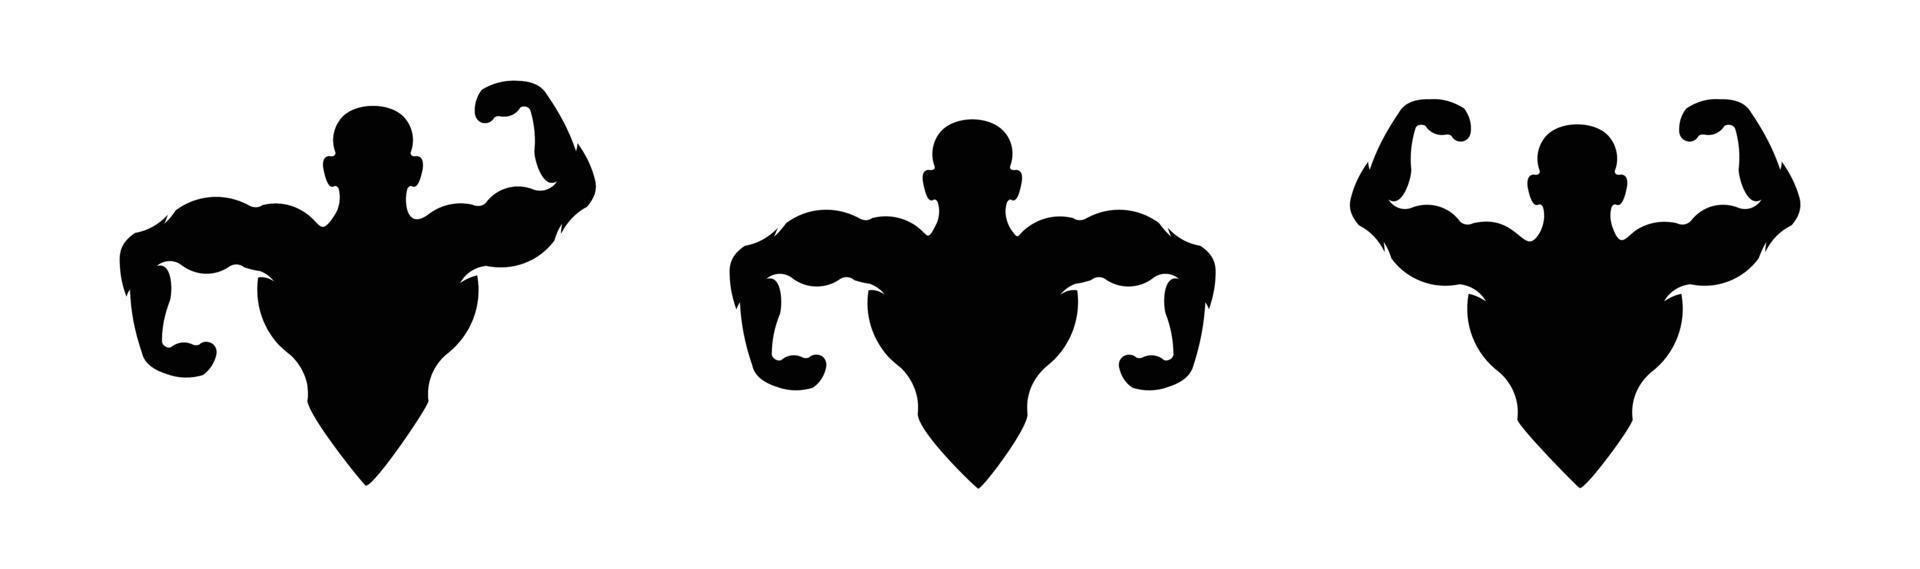 Academia logotipo vetor ícone ilustração, fitness clube logotipo com exercício Atlético homem e mulher vetor ilustração.